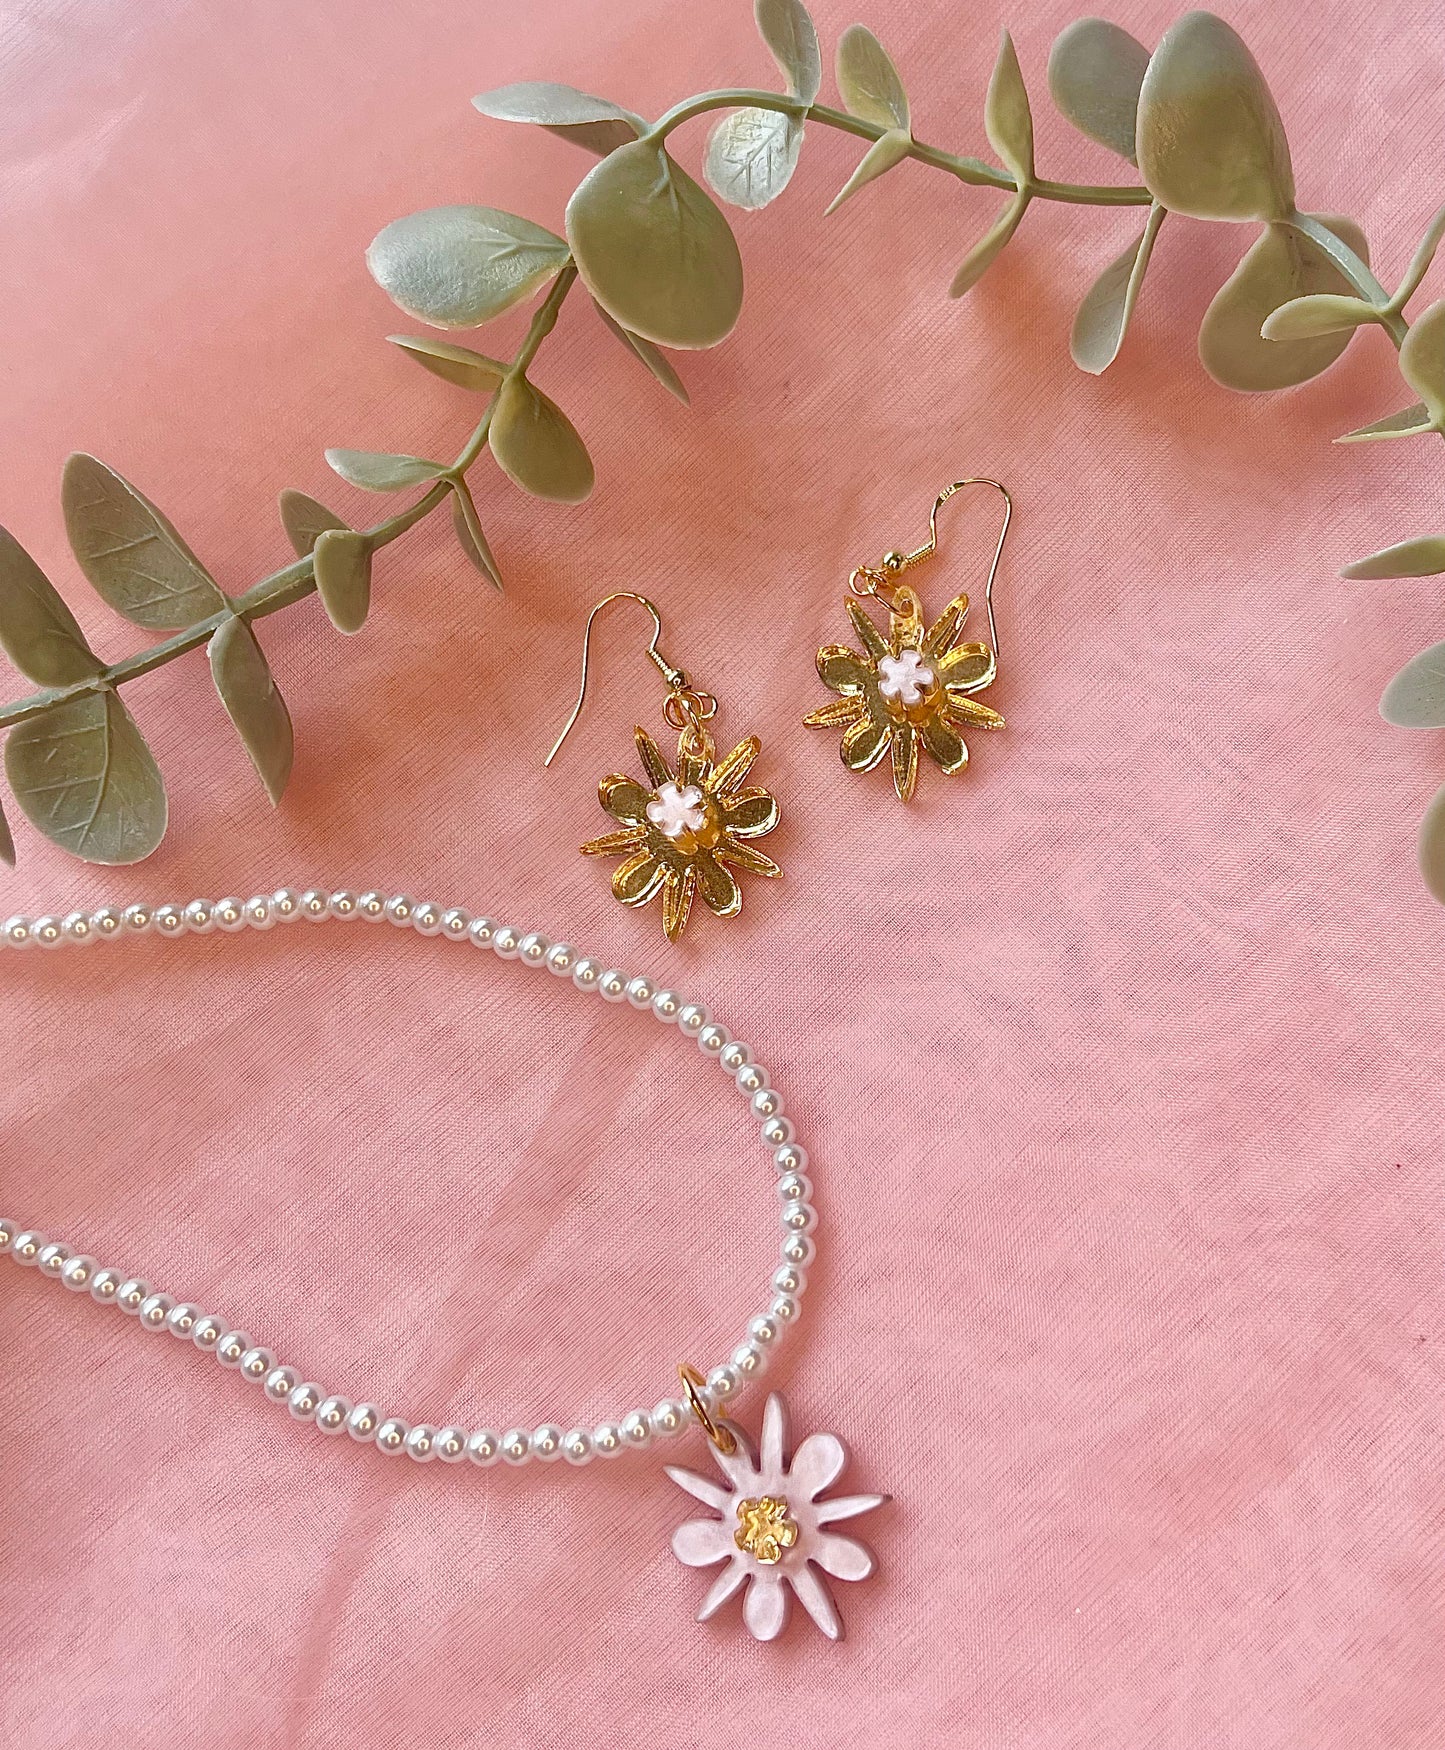 Floral fancies necklace - Gold